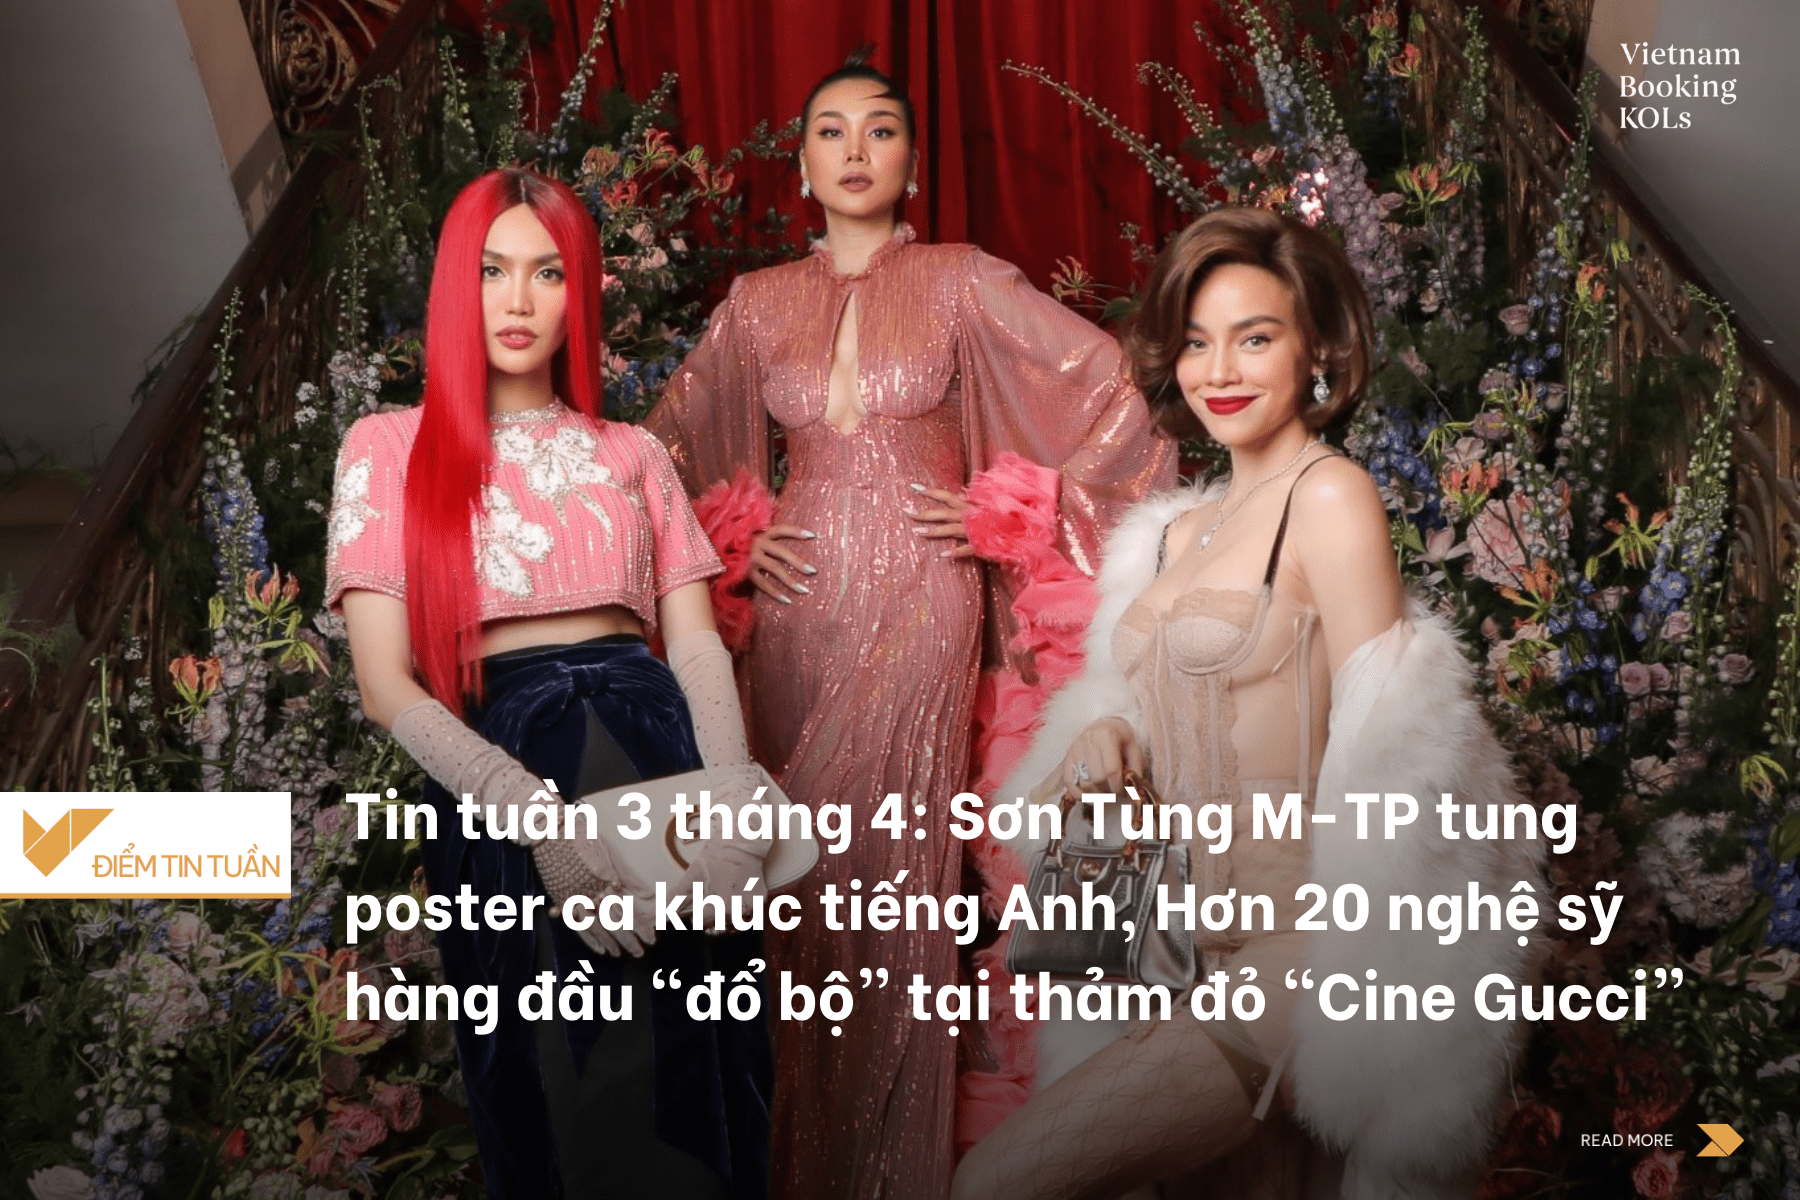 Tin tuần 3 tháng 4: Sơn Tùng M-TP tung poster ca khúc tiếng Anh đầu tiên, “Cine Gucci” thu hút hơn 20 nghệ sỹ hàng đầu “đổ bộ” tại thảm đỏ